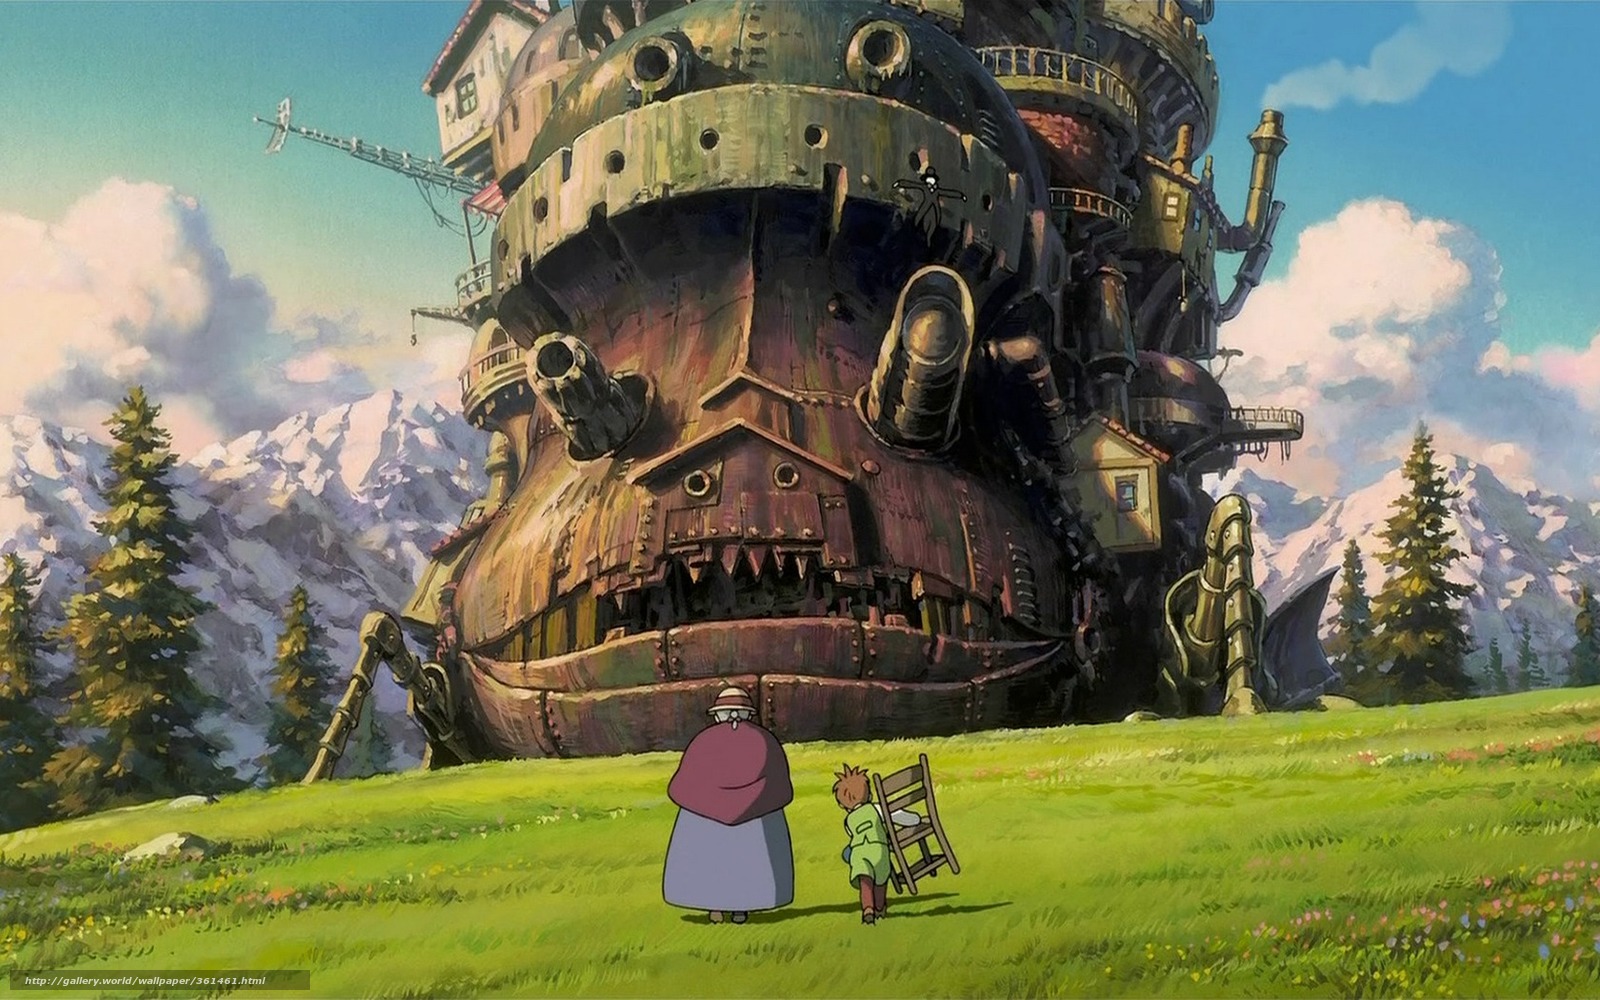 Кадр из мультфильма "Ходячий замок"